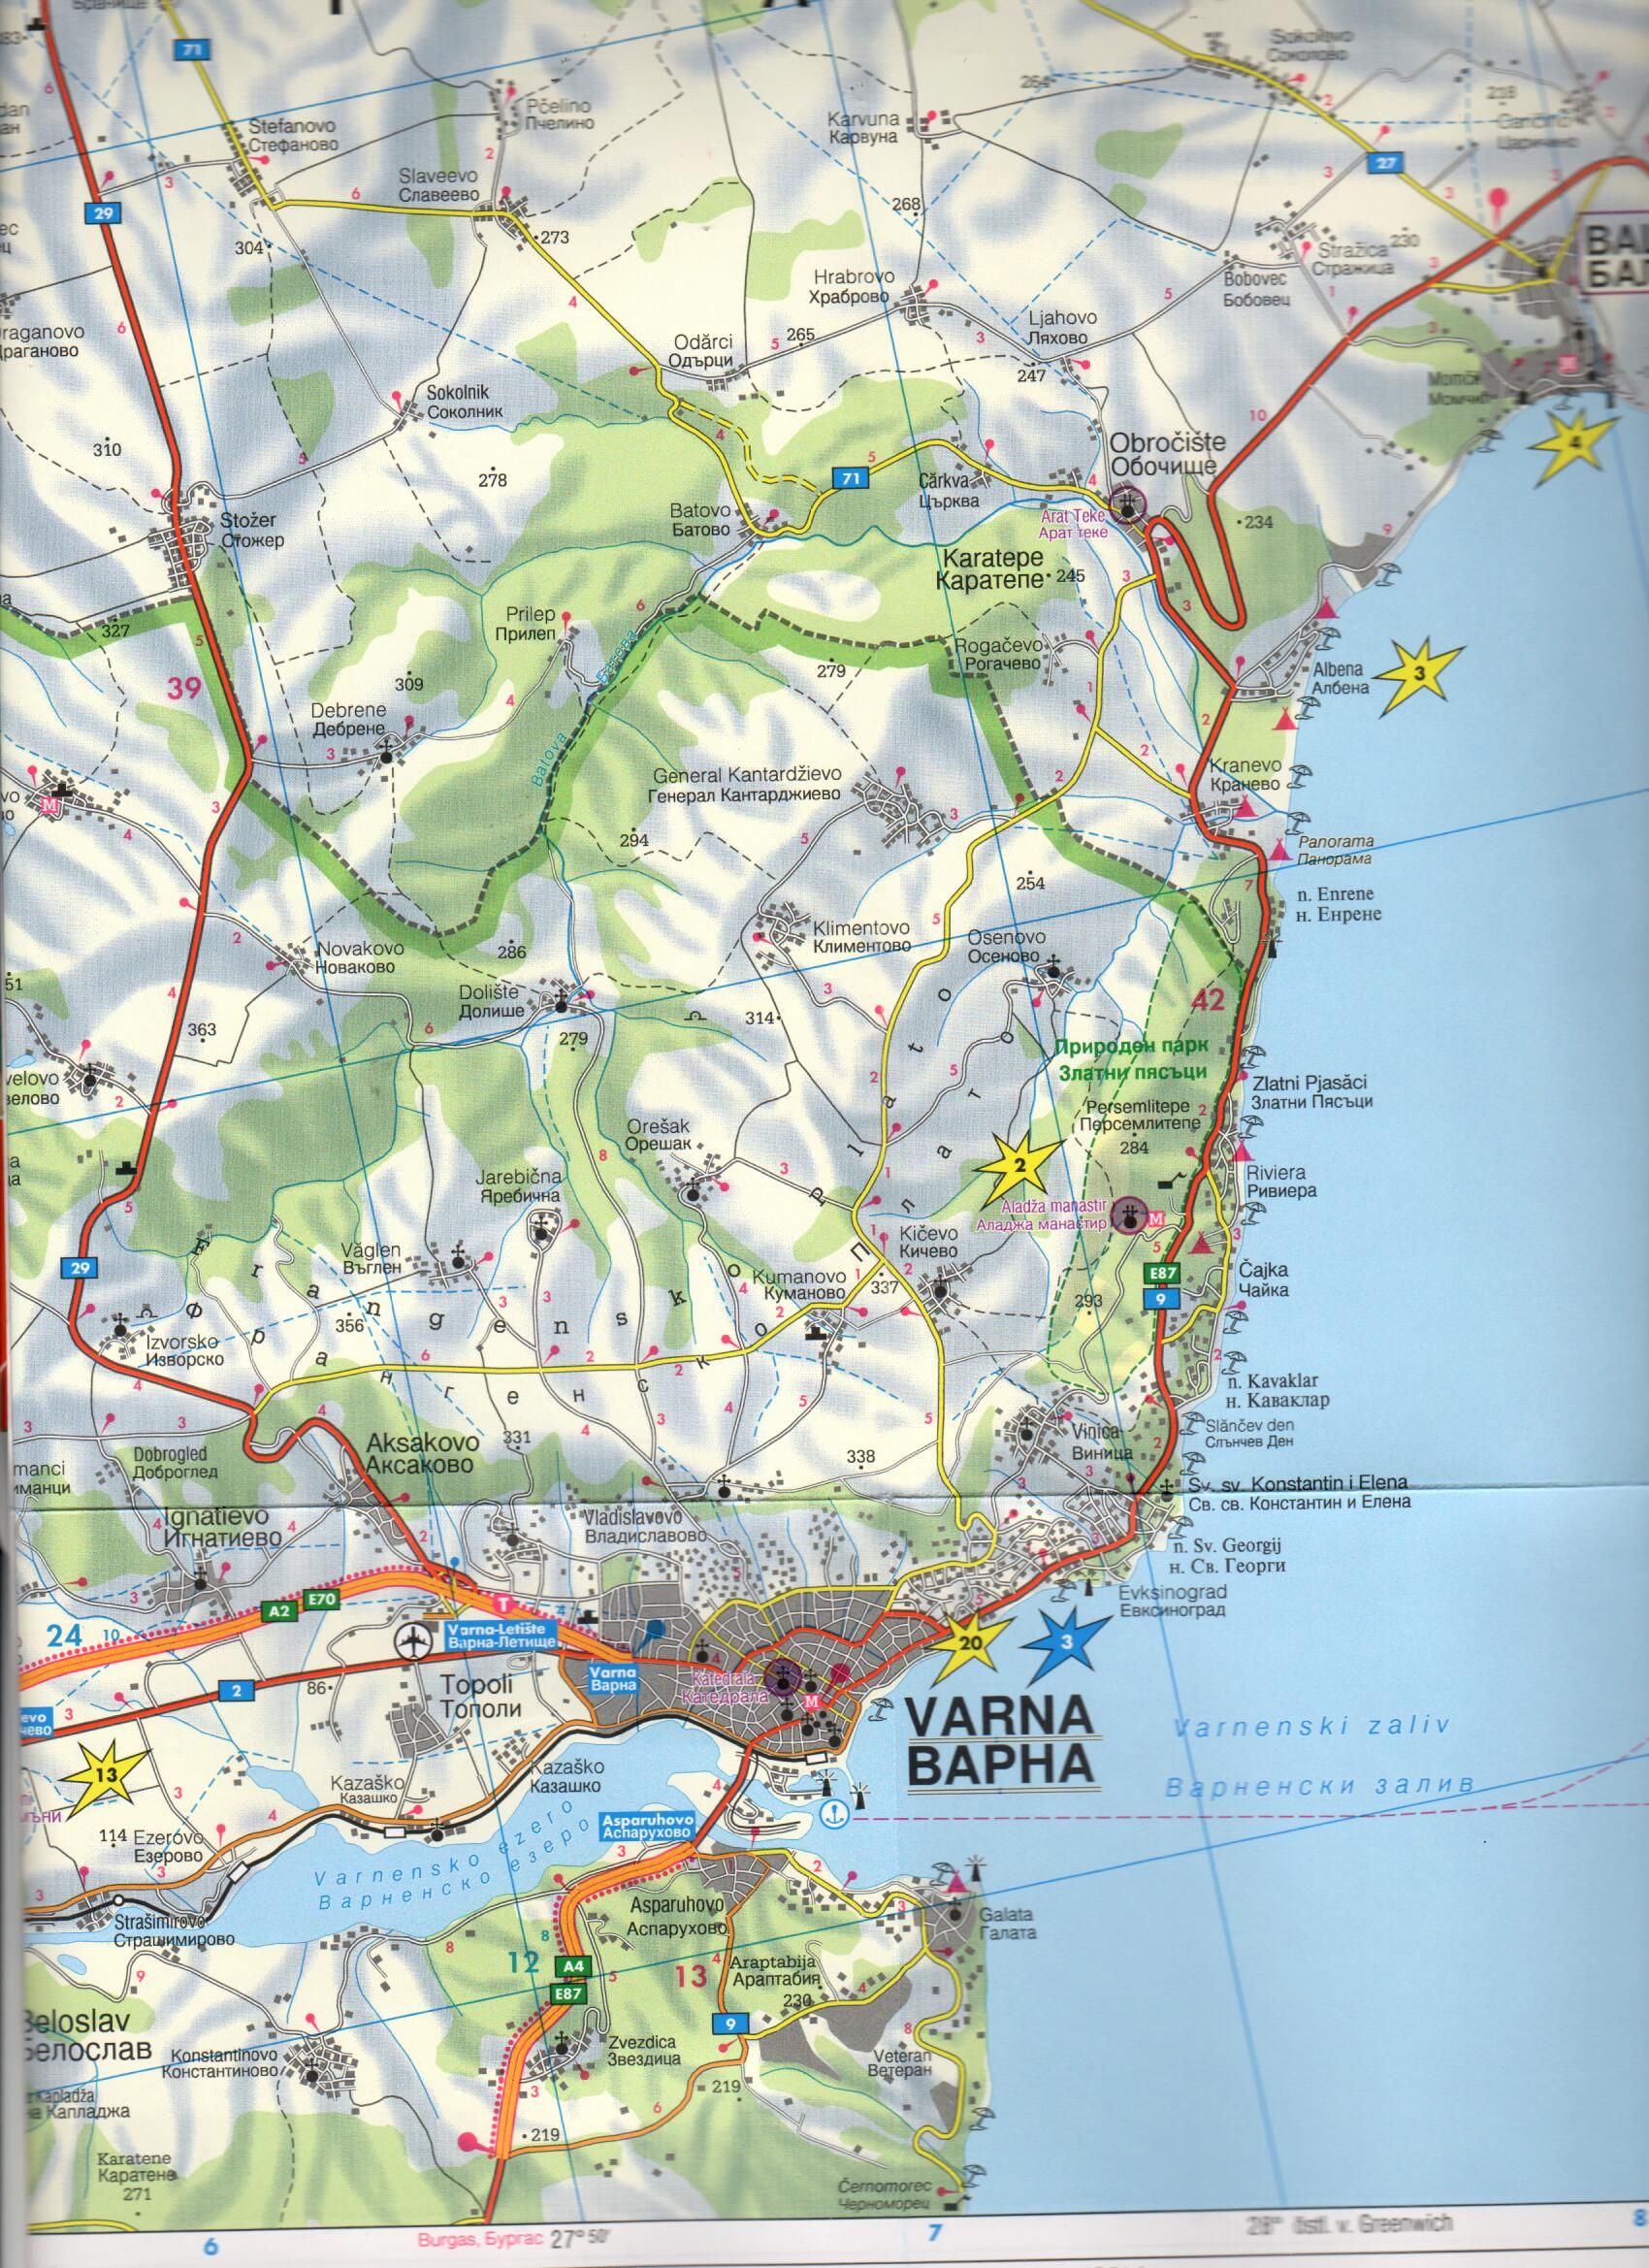 Black sea coast map sample